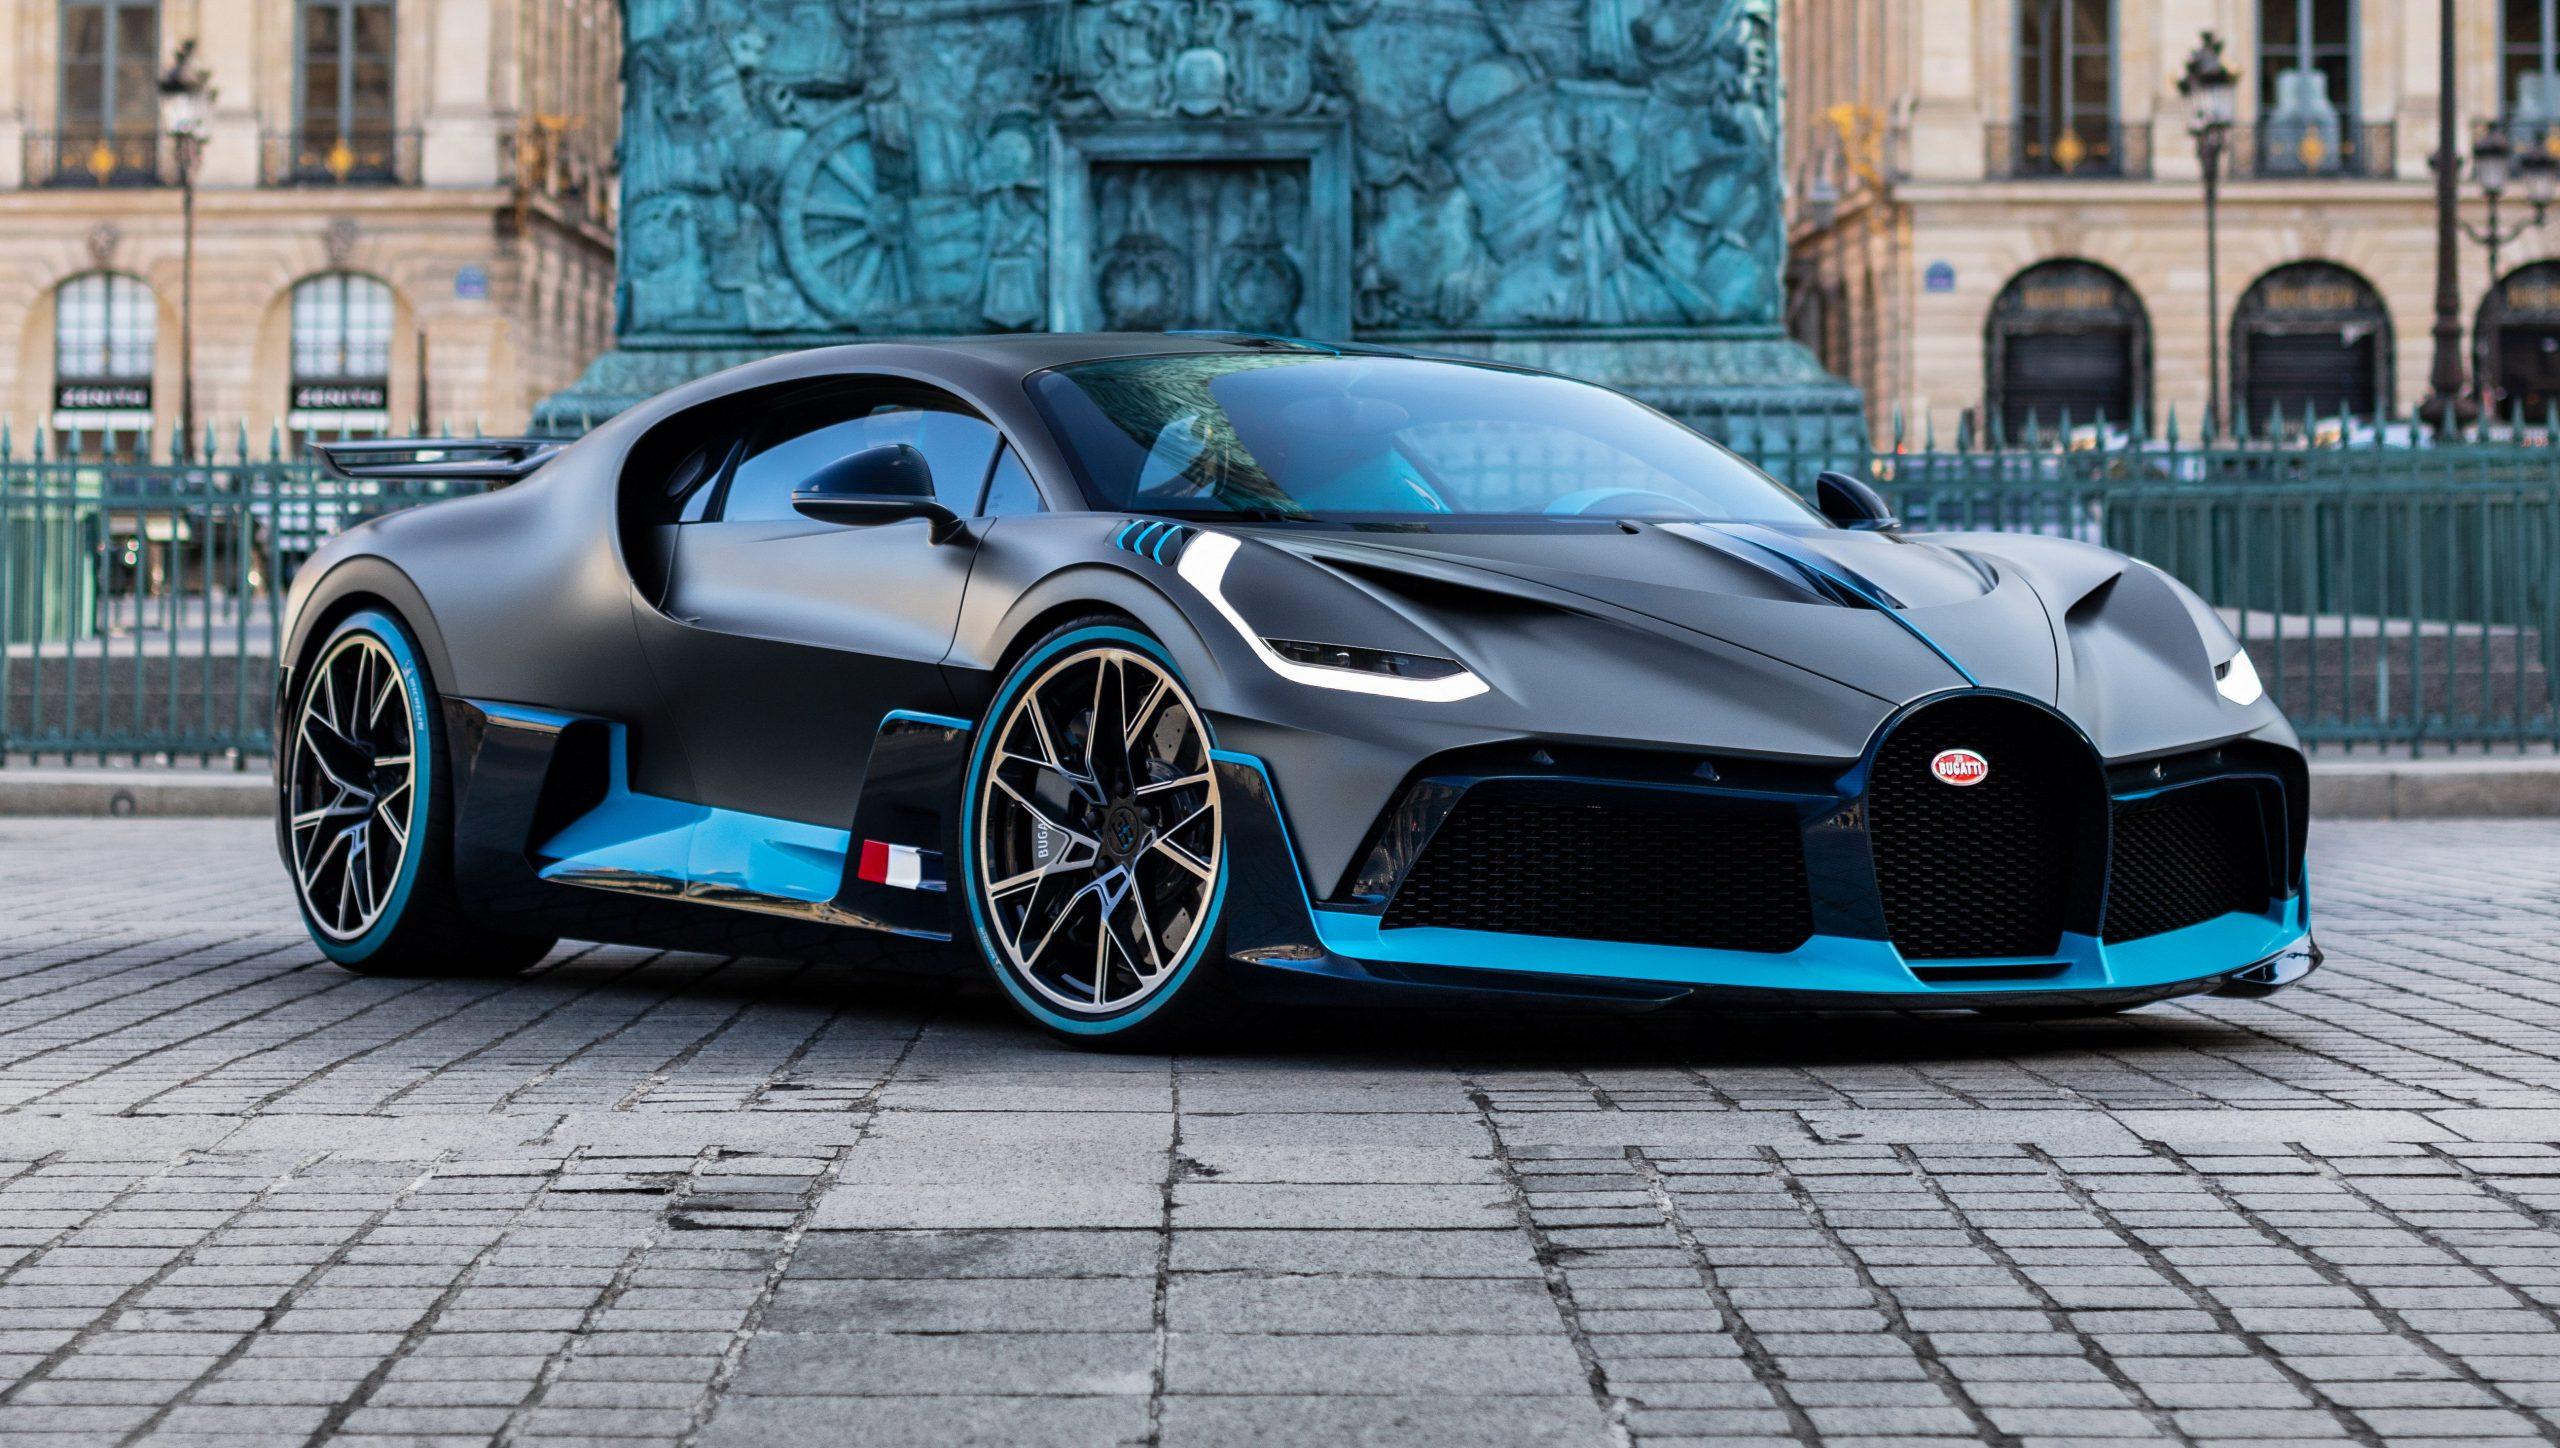 Goederen Melodieus vacuüm Bugatti Divo kopen? Dit is je kans - TopGear Nederland